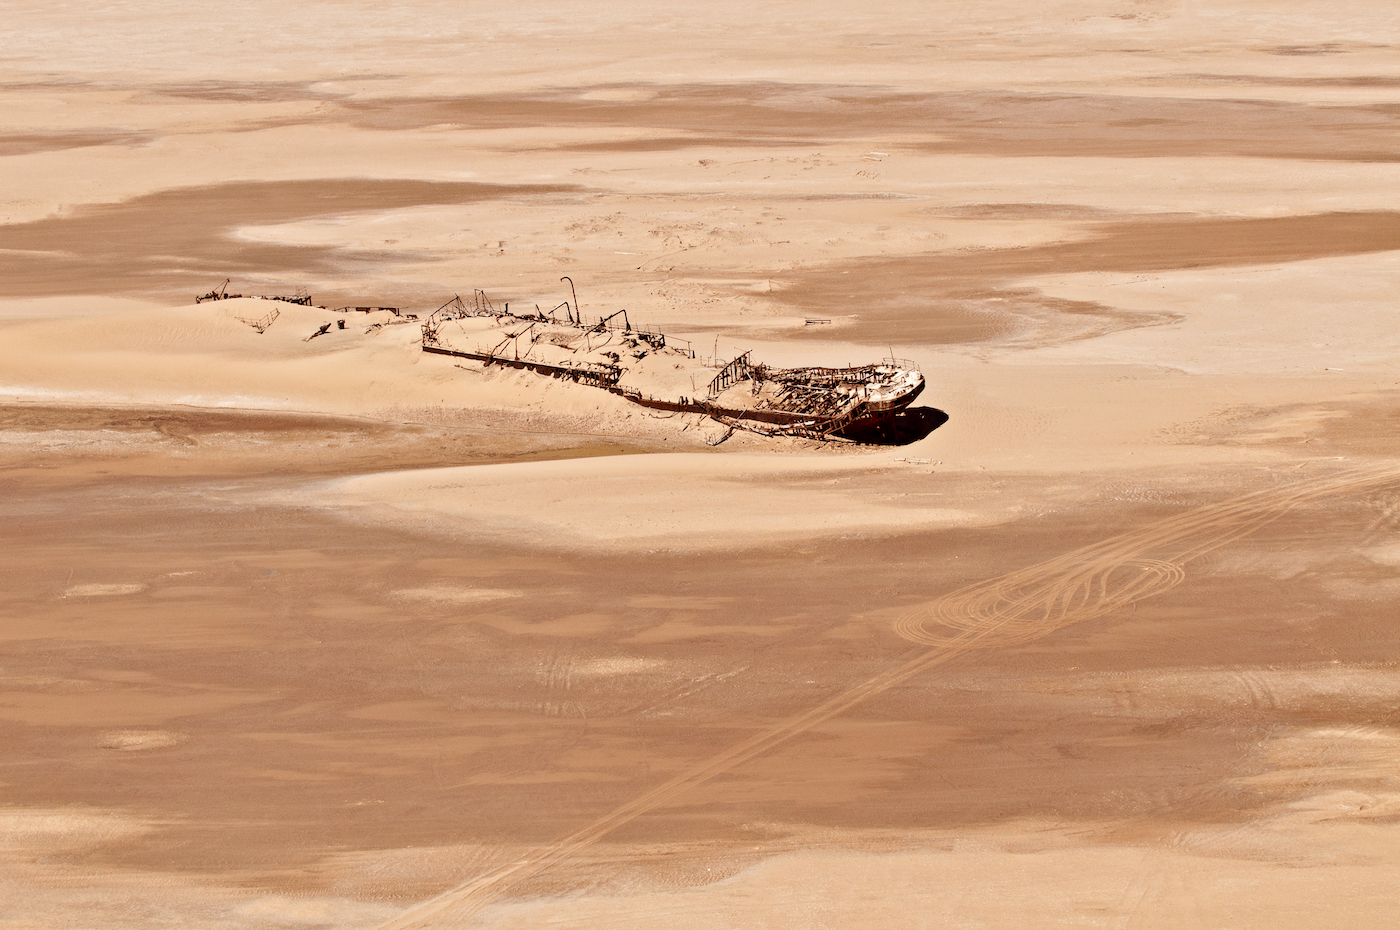 Eduard Bohlen scheepswrak Skeleton Coast, Namibië